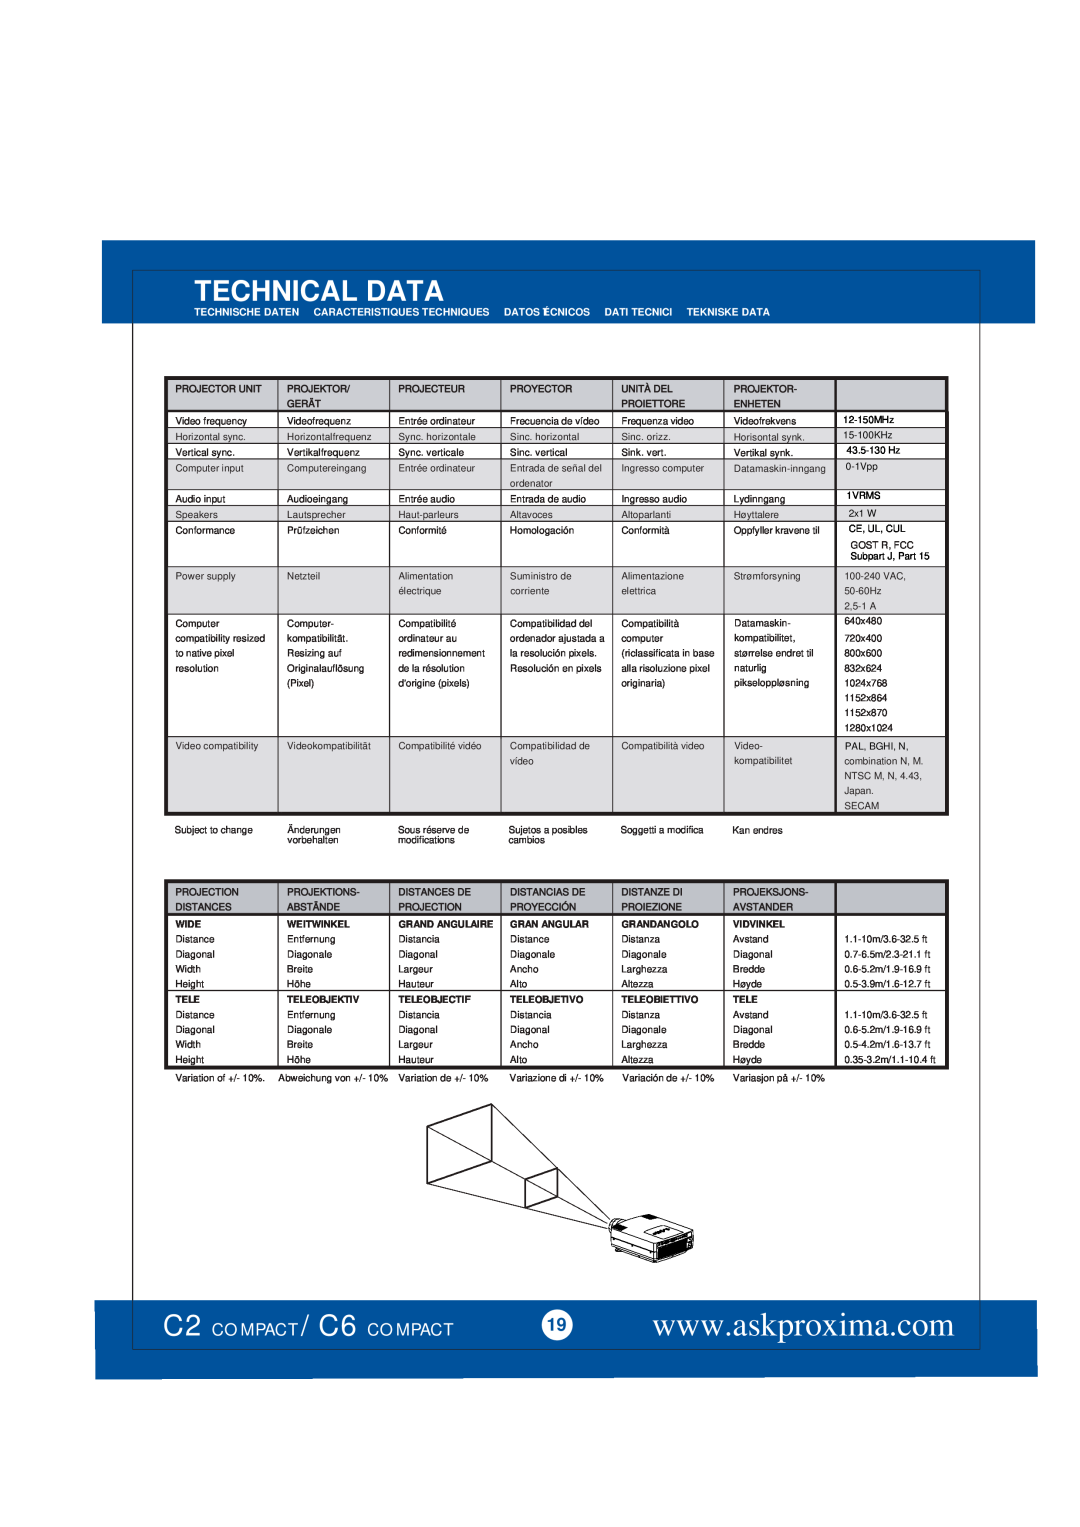 Ask Proxima Technical Data, C2 COMPACT / C6 COMPACT, Technische Daten, Caracteristiques Techniques, Datos Técnicos 